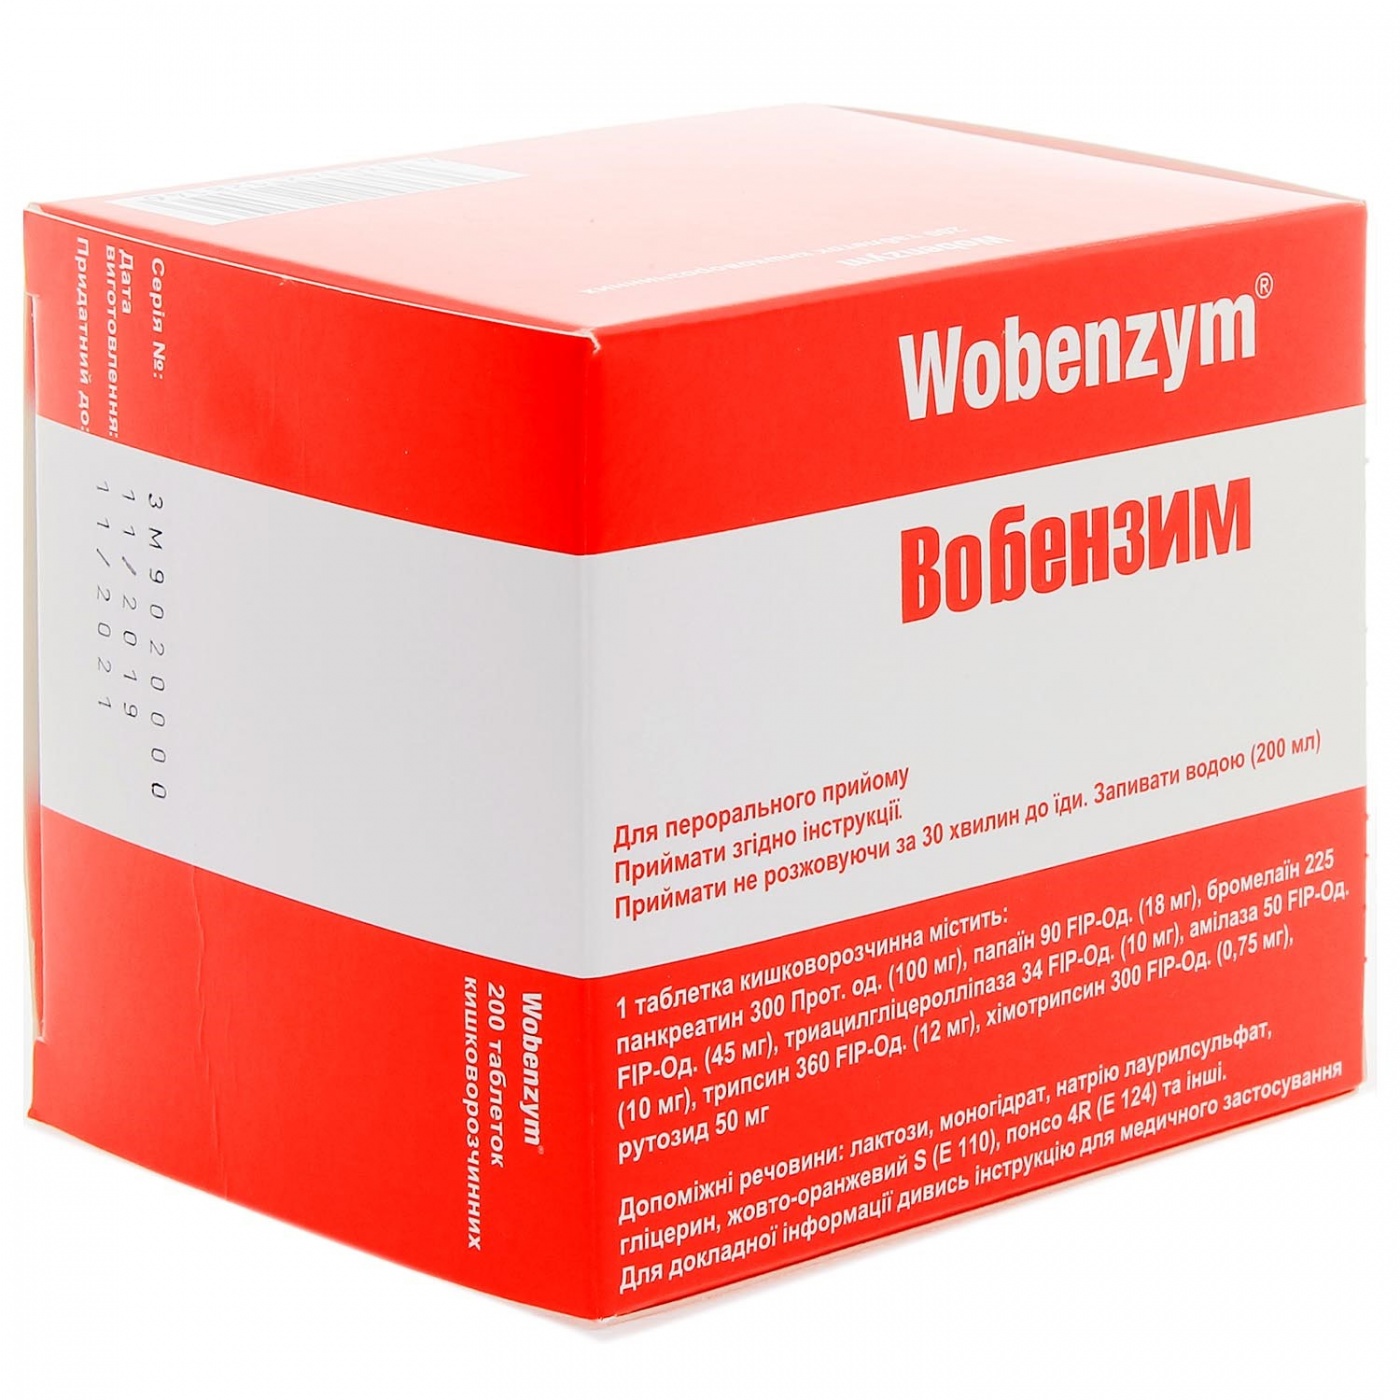 Действительно ли препарат Вобэнзим помогает при множестве заболеваний